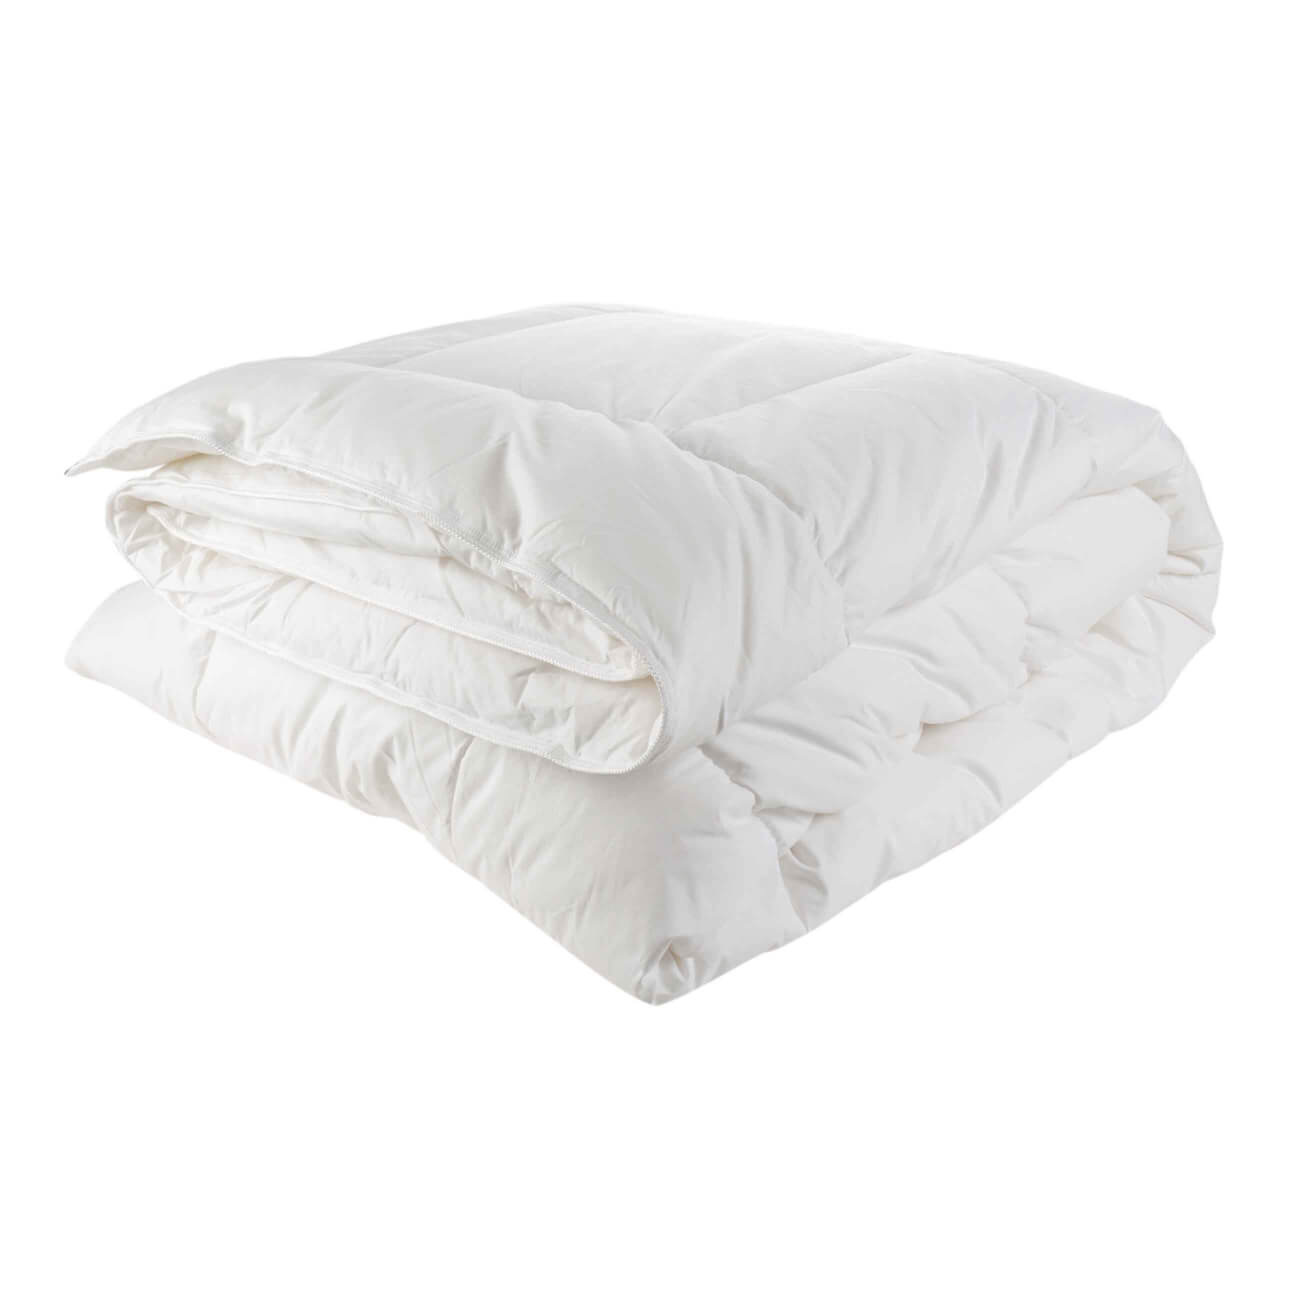 Одеяло, 140х200 см, хлопок/микрофибра, Soft cotton